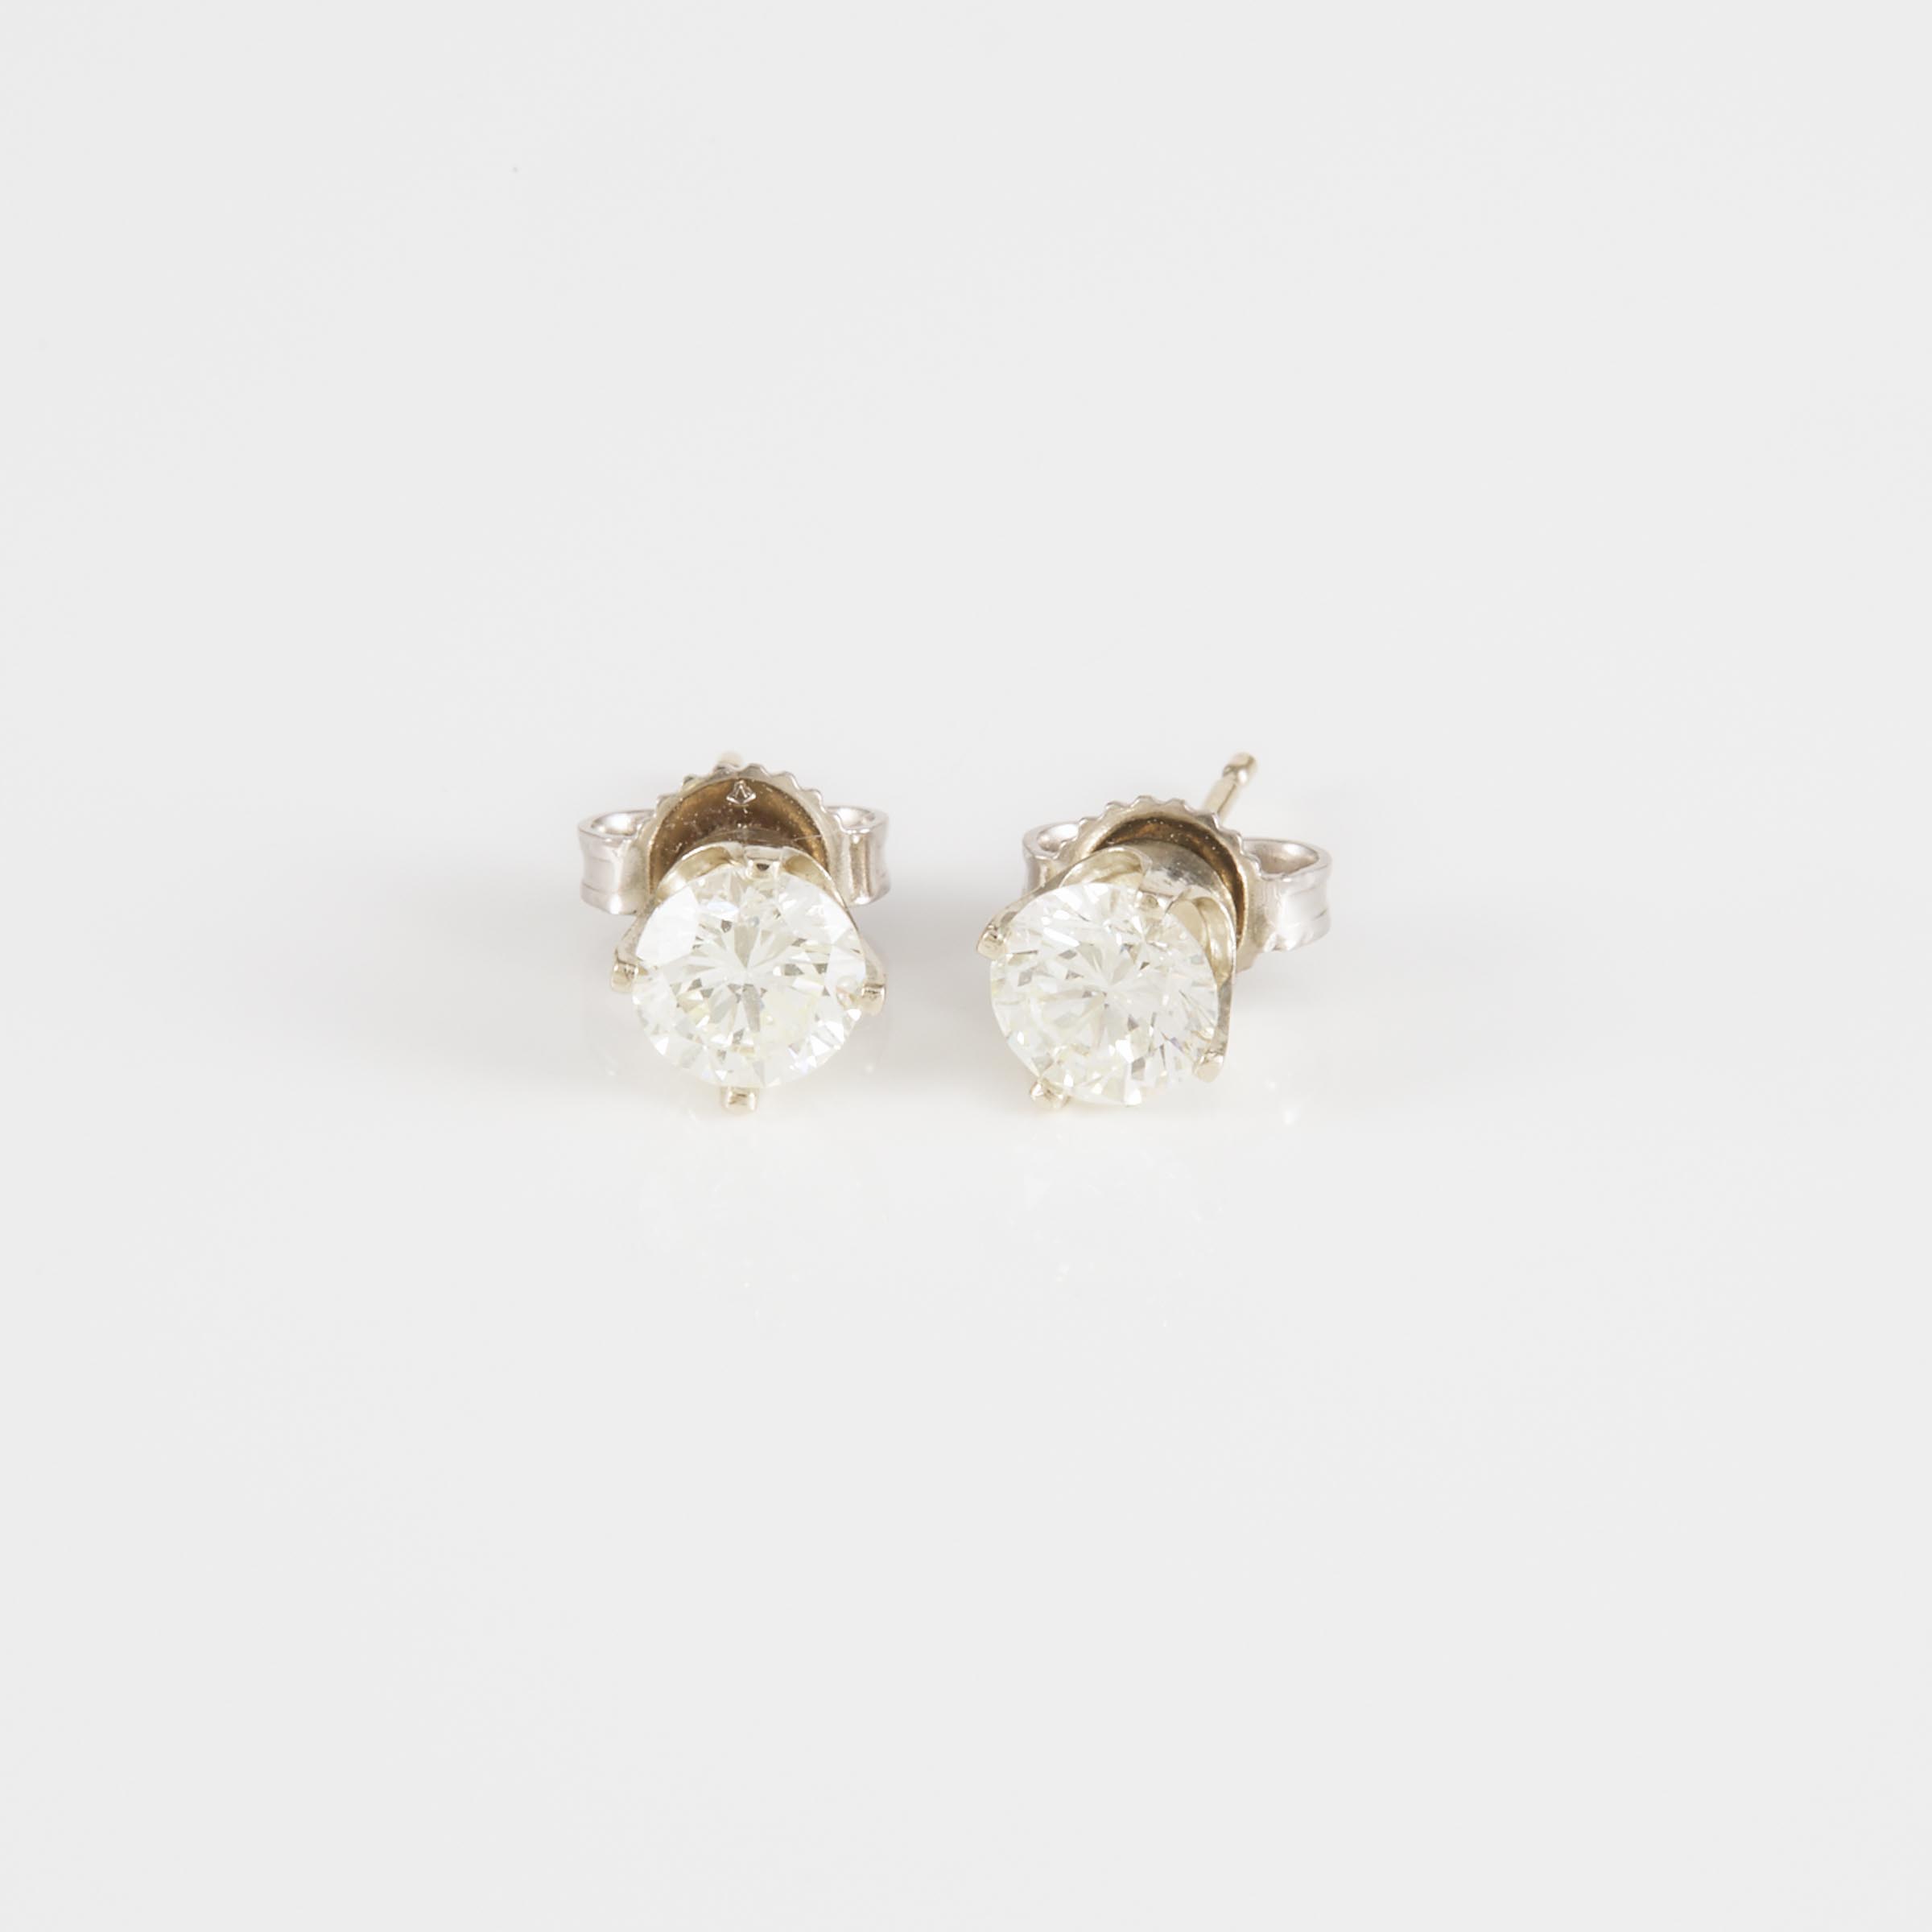 Pair Of 14k White Gold Stud Earrings